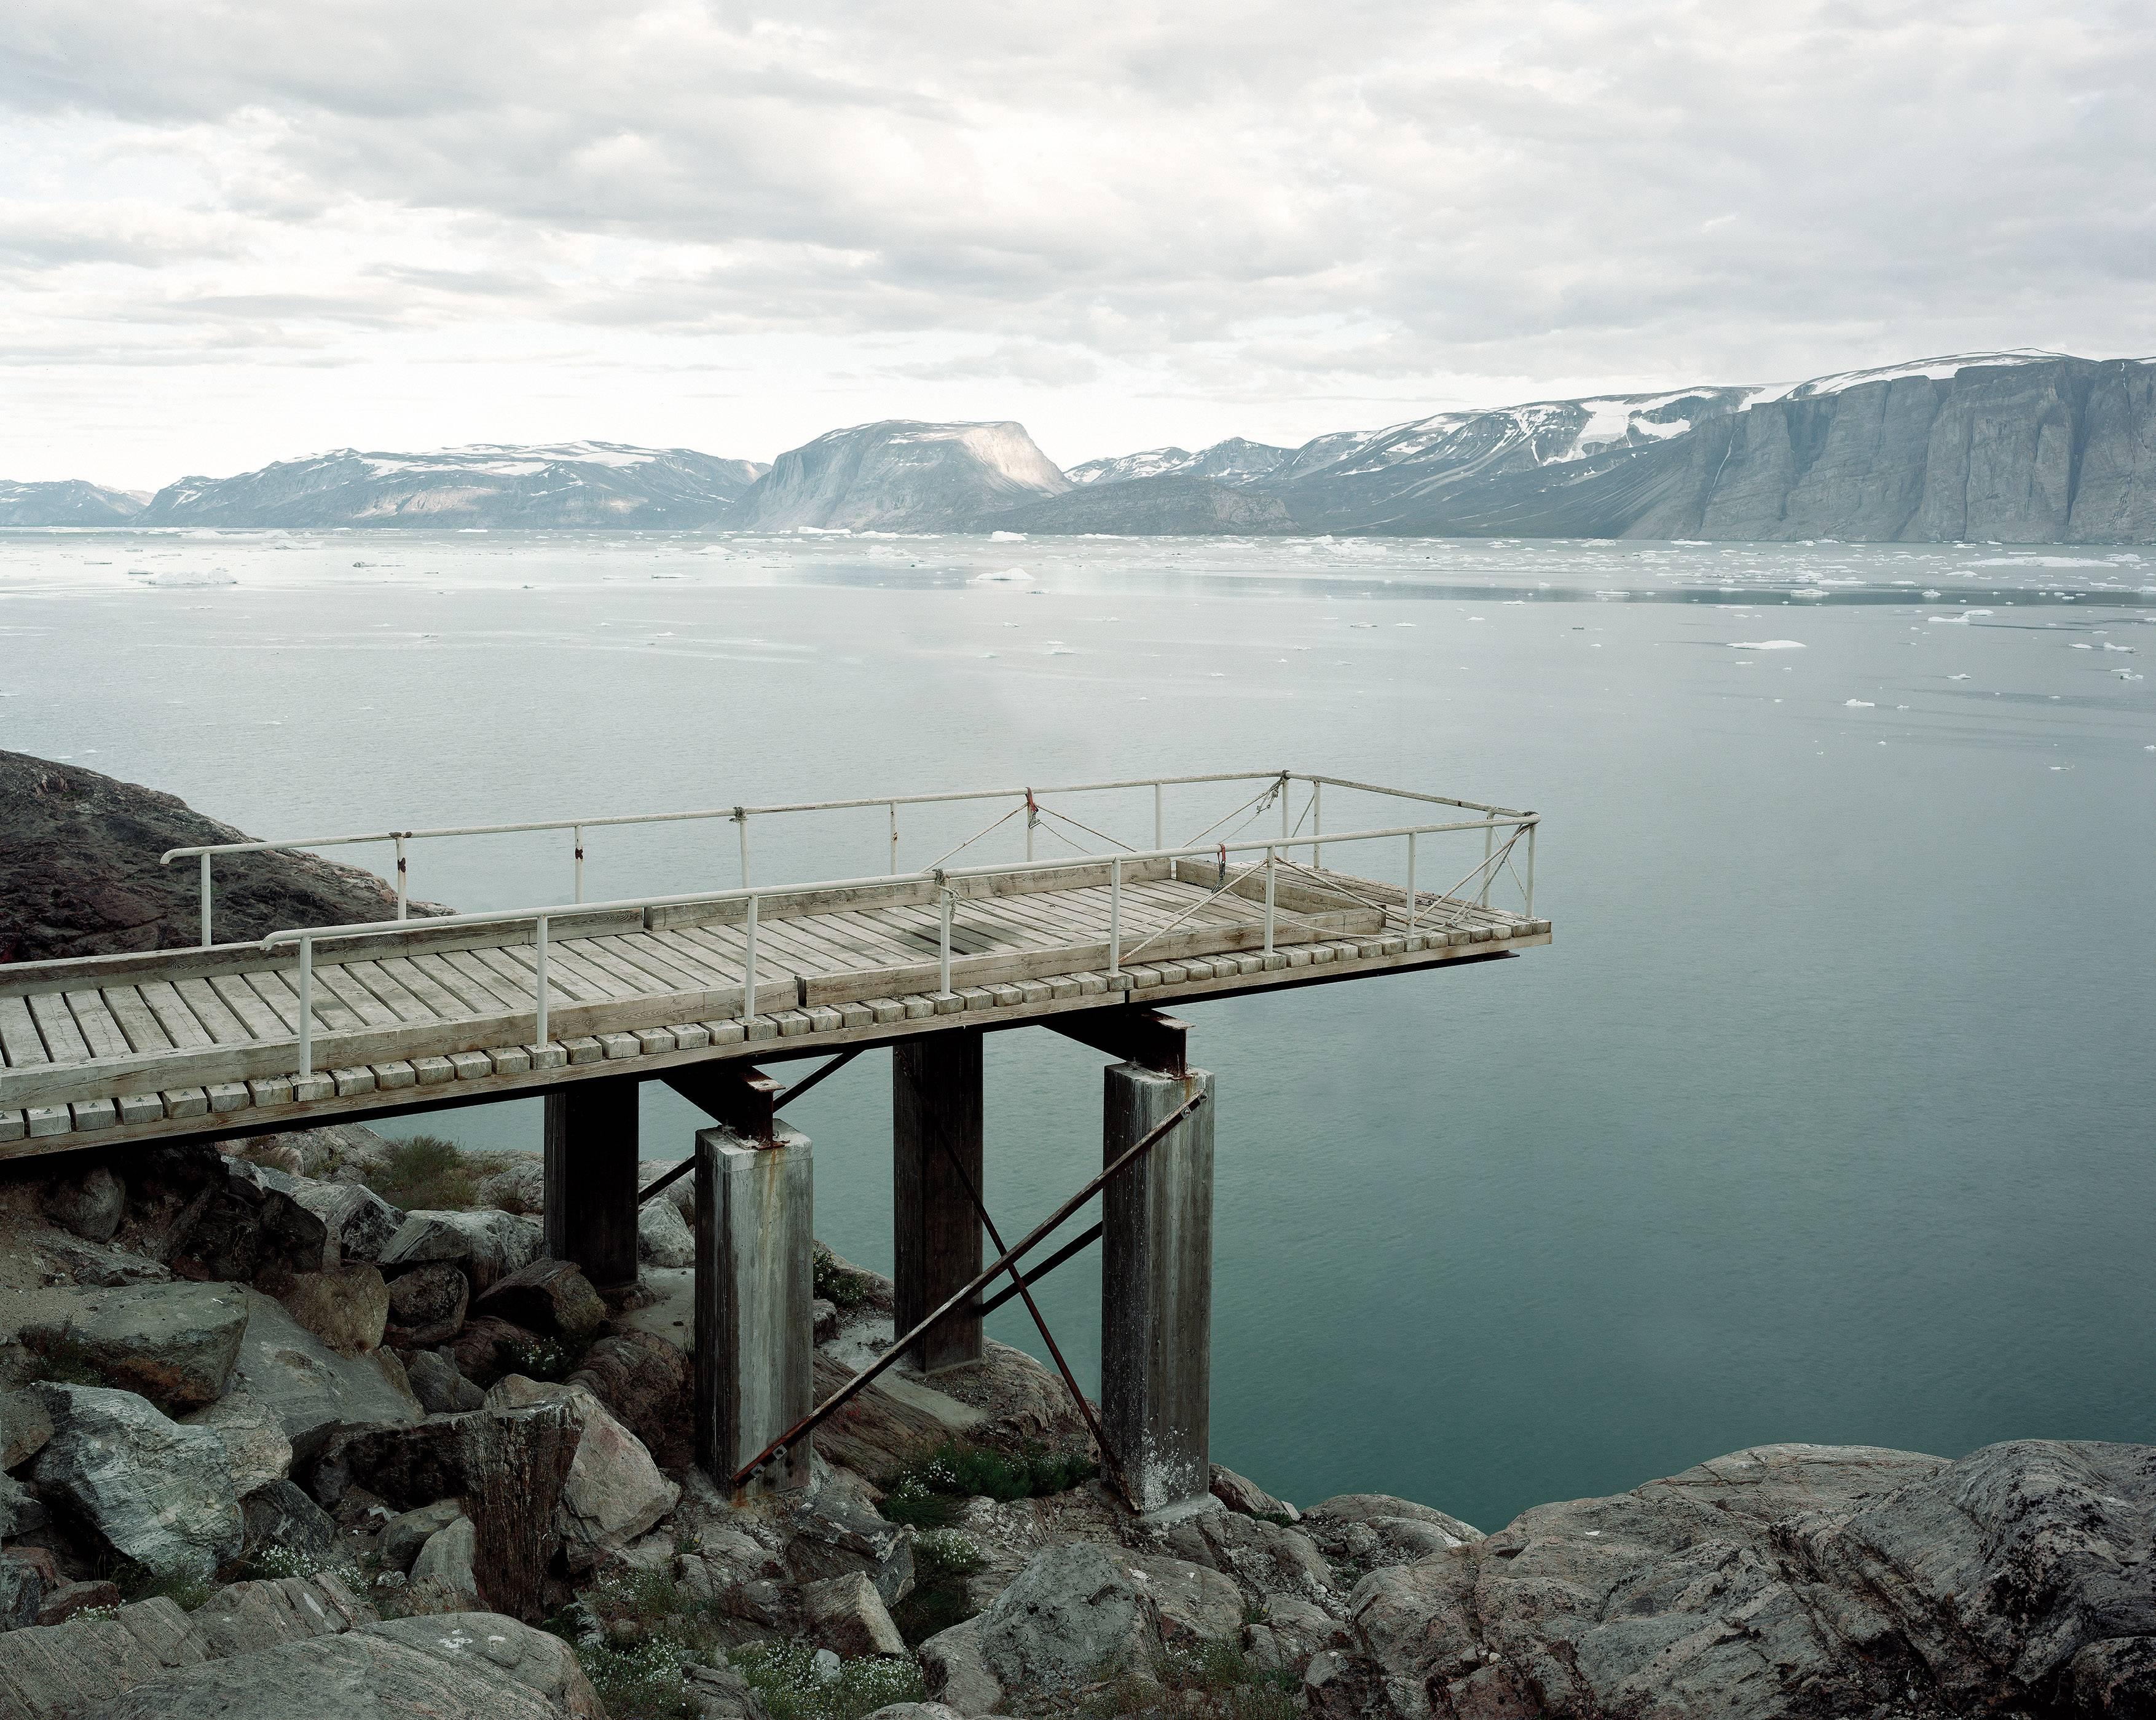 Ikerasak, Qarajaqs Icefjord 2 - Olaf Otto Becker (Photographie de paysages en couleur)
Signé au dos
Impression au pigment d'archivage

Disponible en trois tailles :
25 x 29.5 pouces, d'une édition de cinq exemplaires
45.5 x 54.5 pouces, d'une